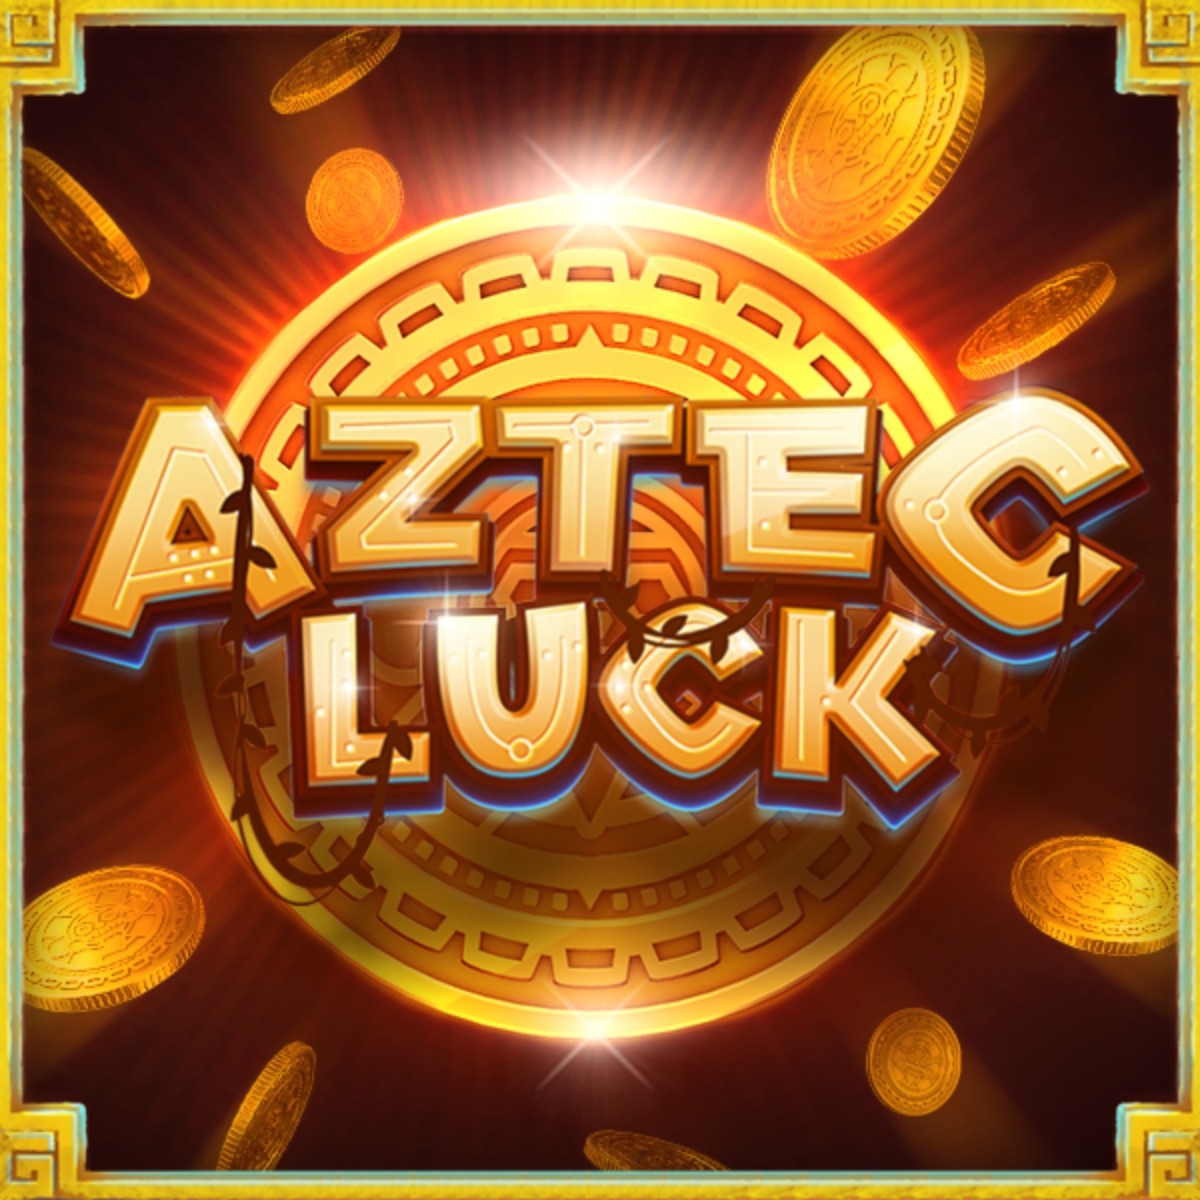 Aztec Luck demo